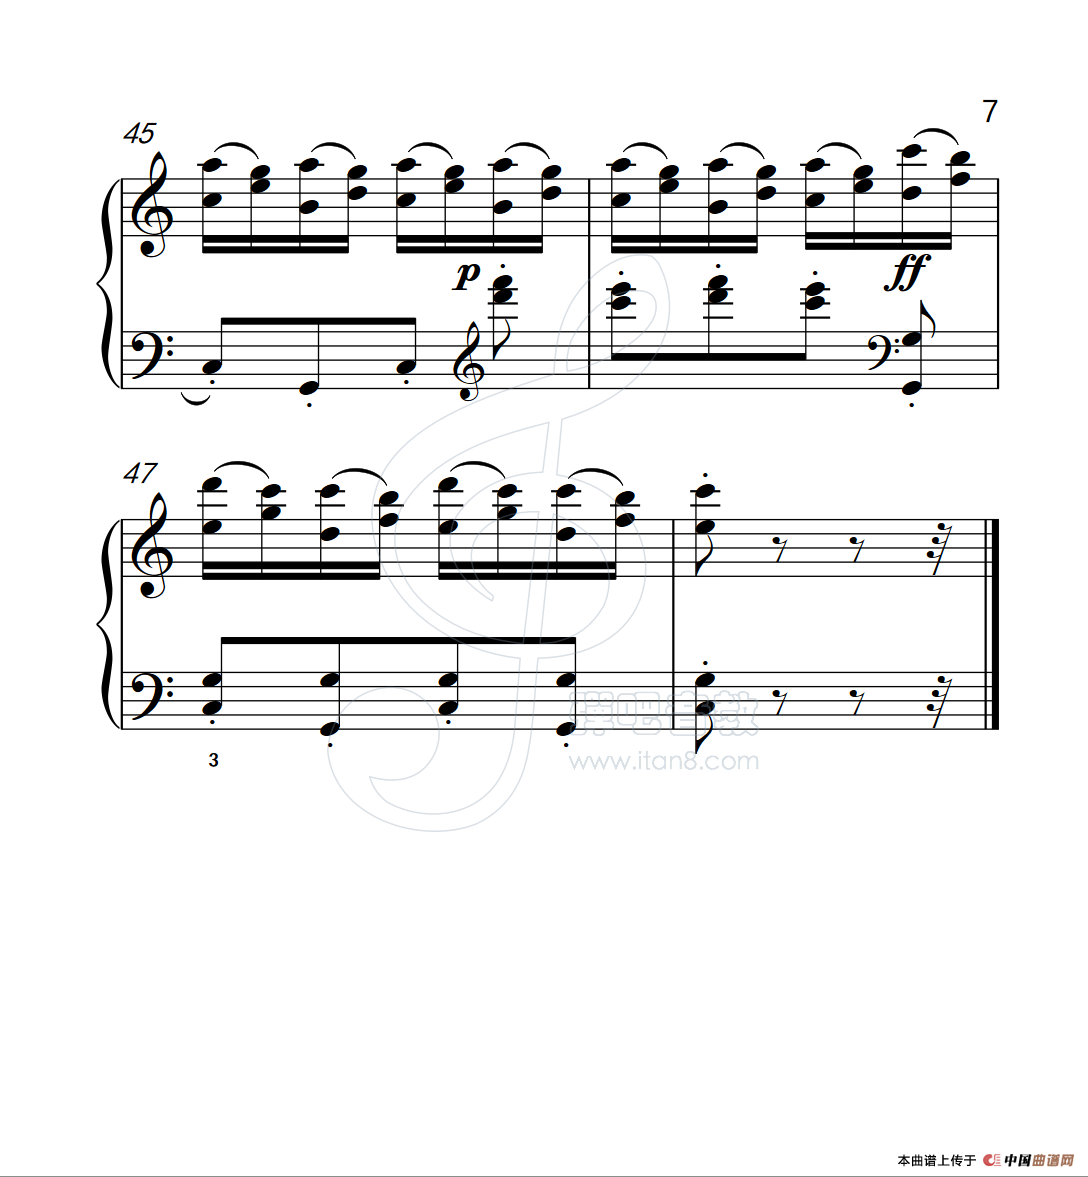 《练习曲 26》钢琴曲谱图分享